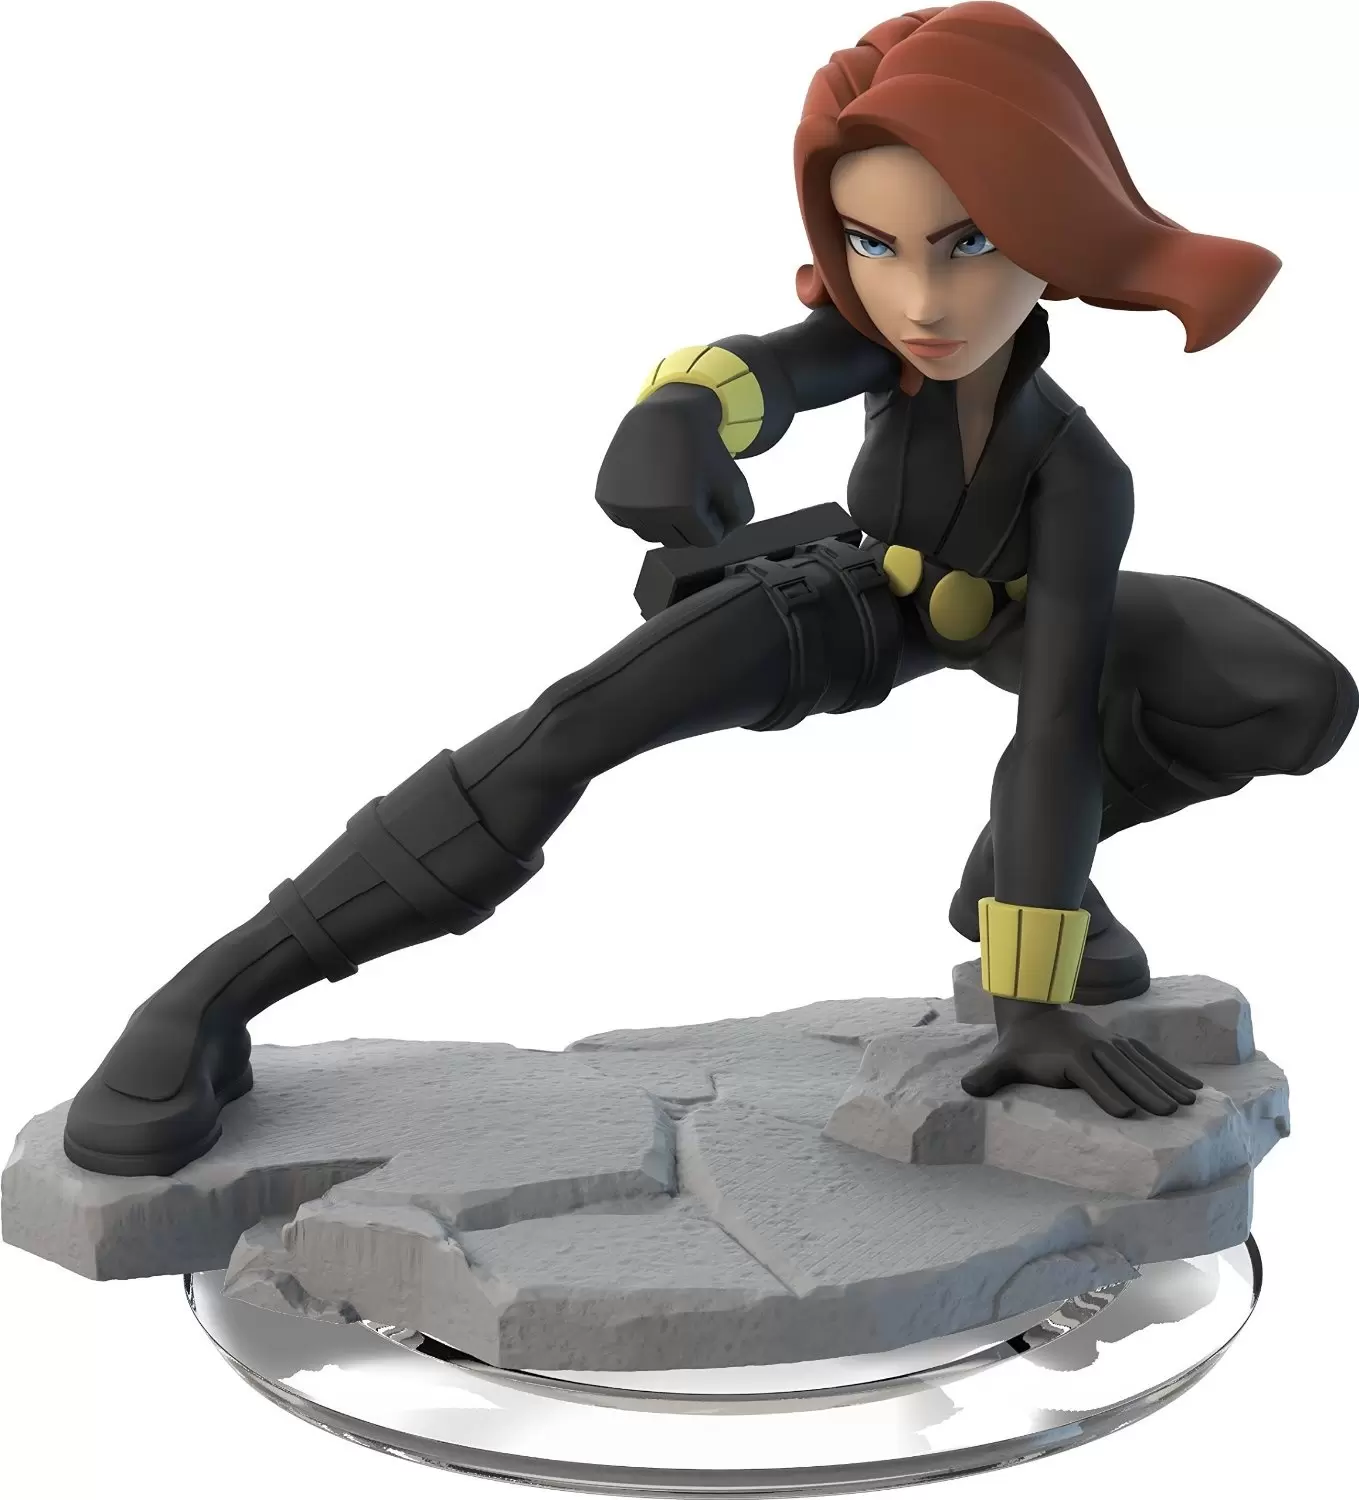 Disney Infinity Action figures - Black Widow